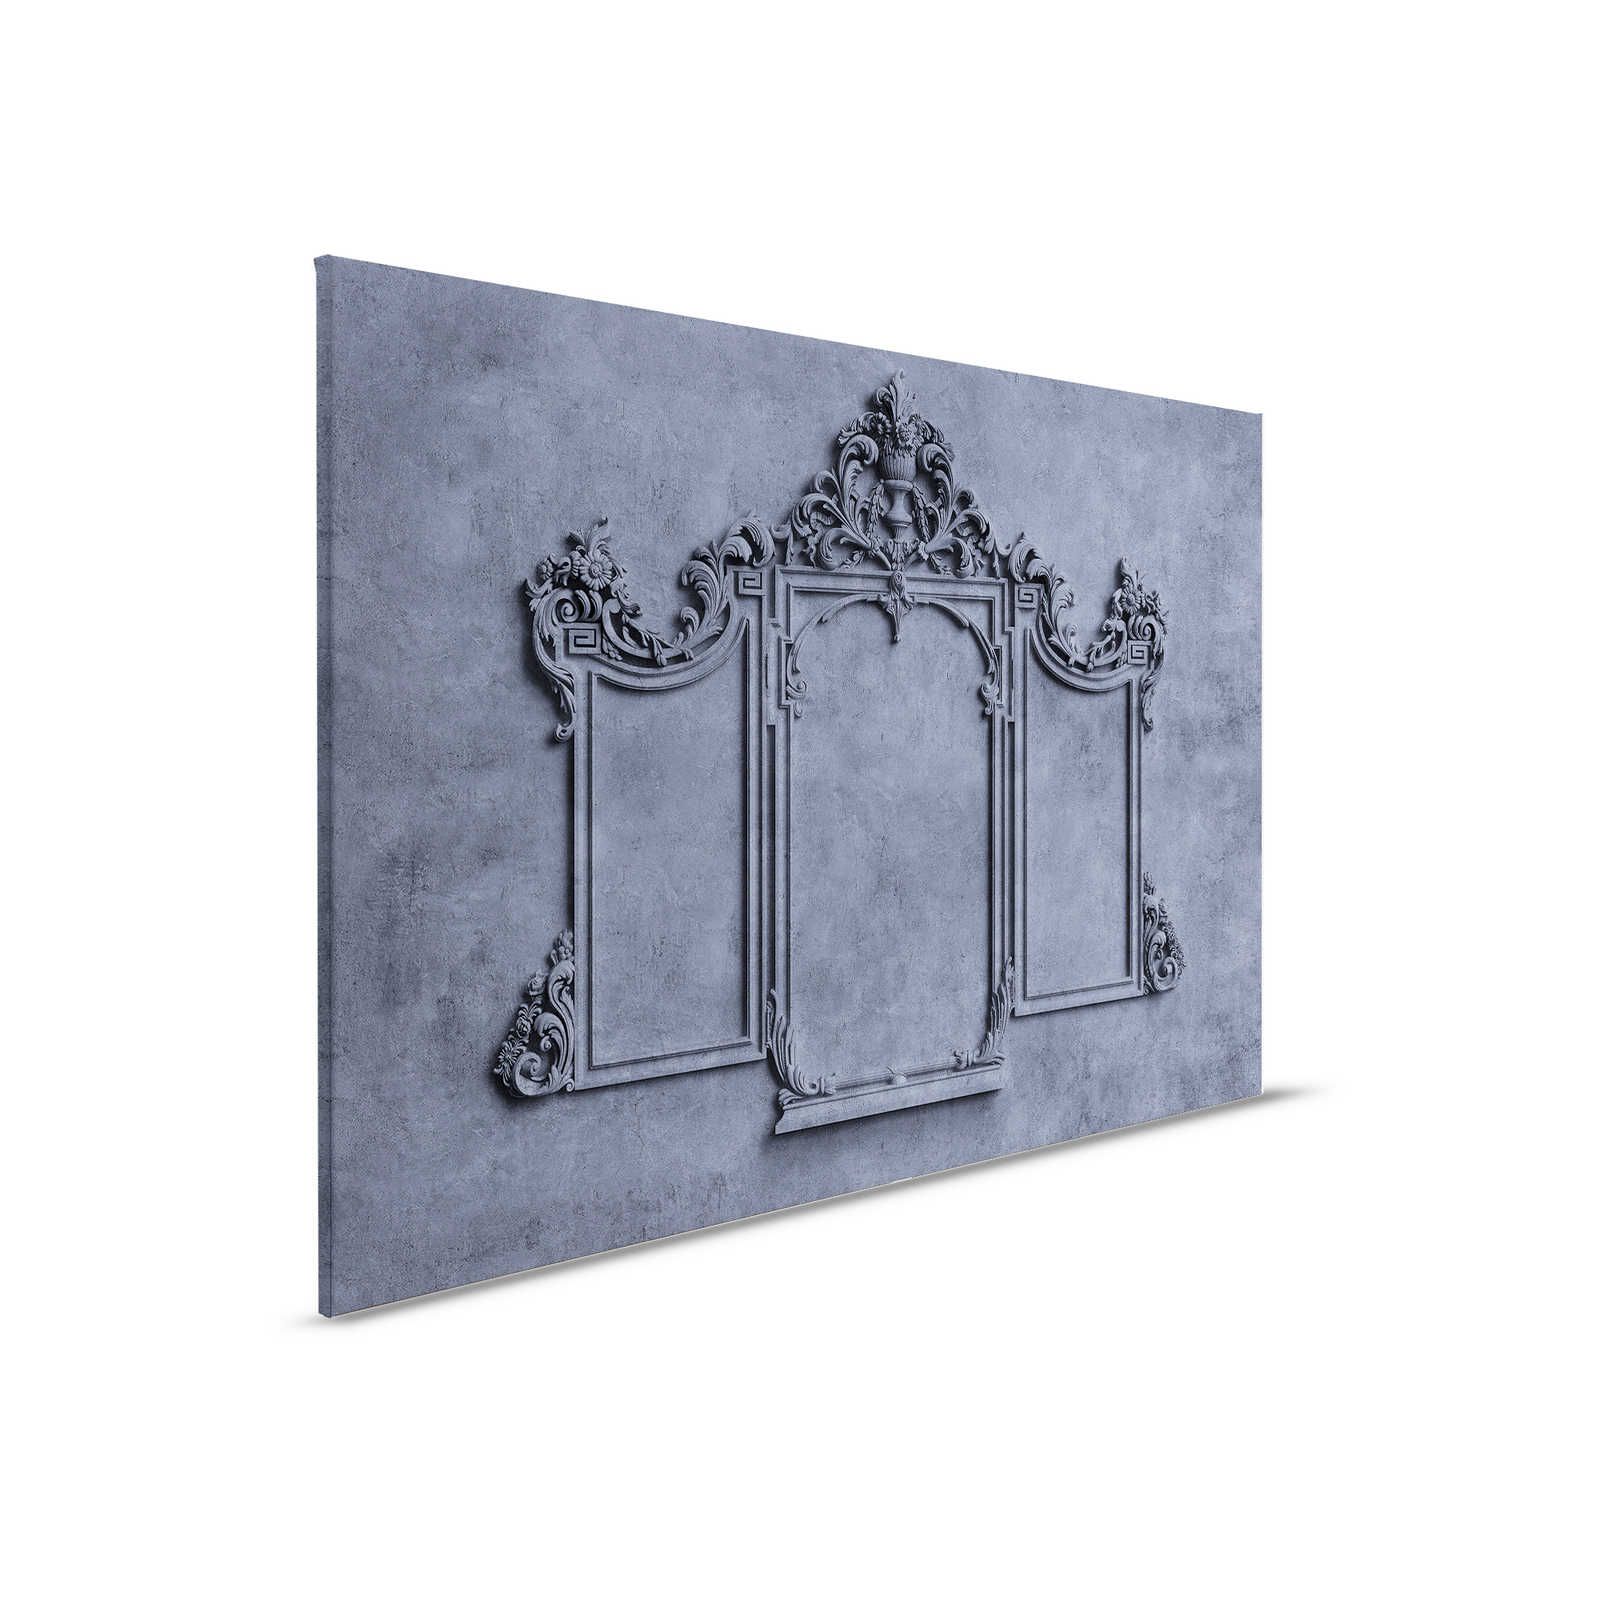 Lyon 3 - Quadro su tela 3D con cornice in stucco e intonaco blu - 0,90 m x 0,60 m
